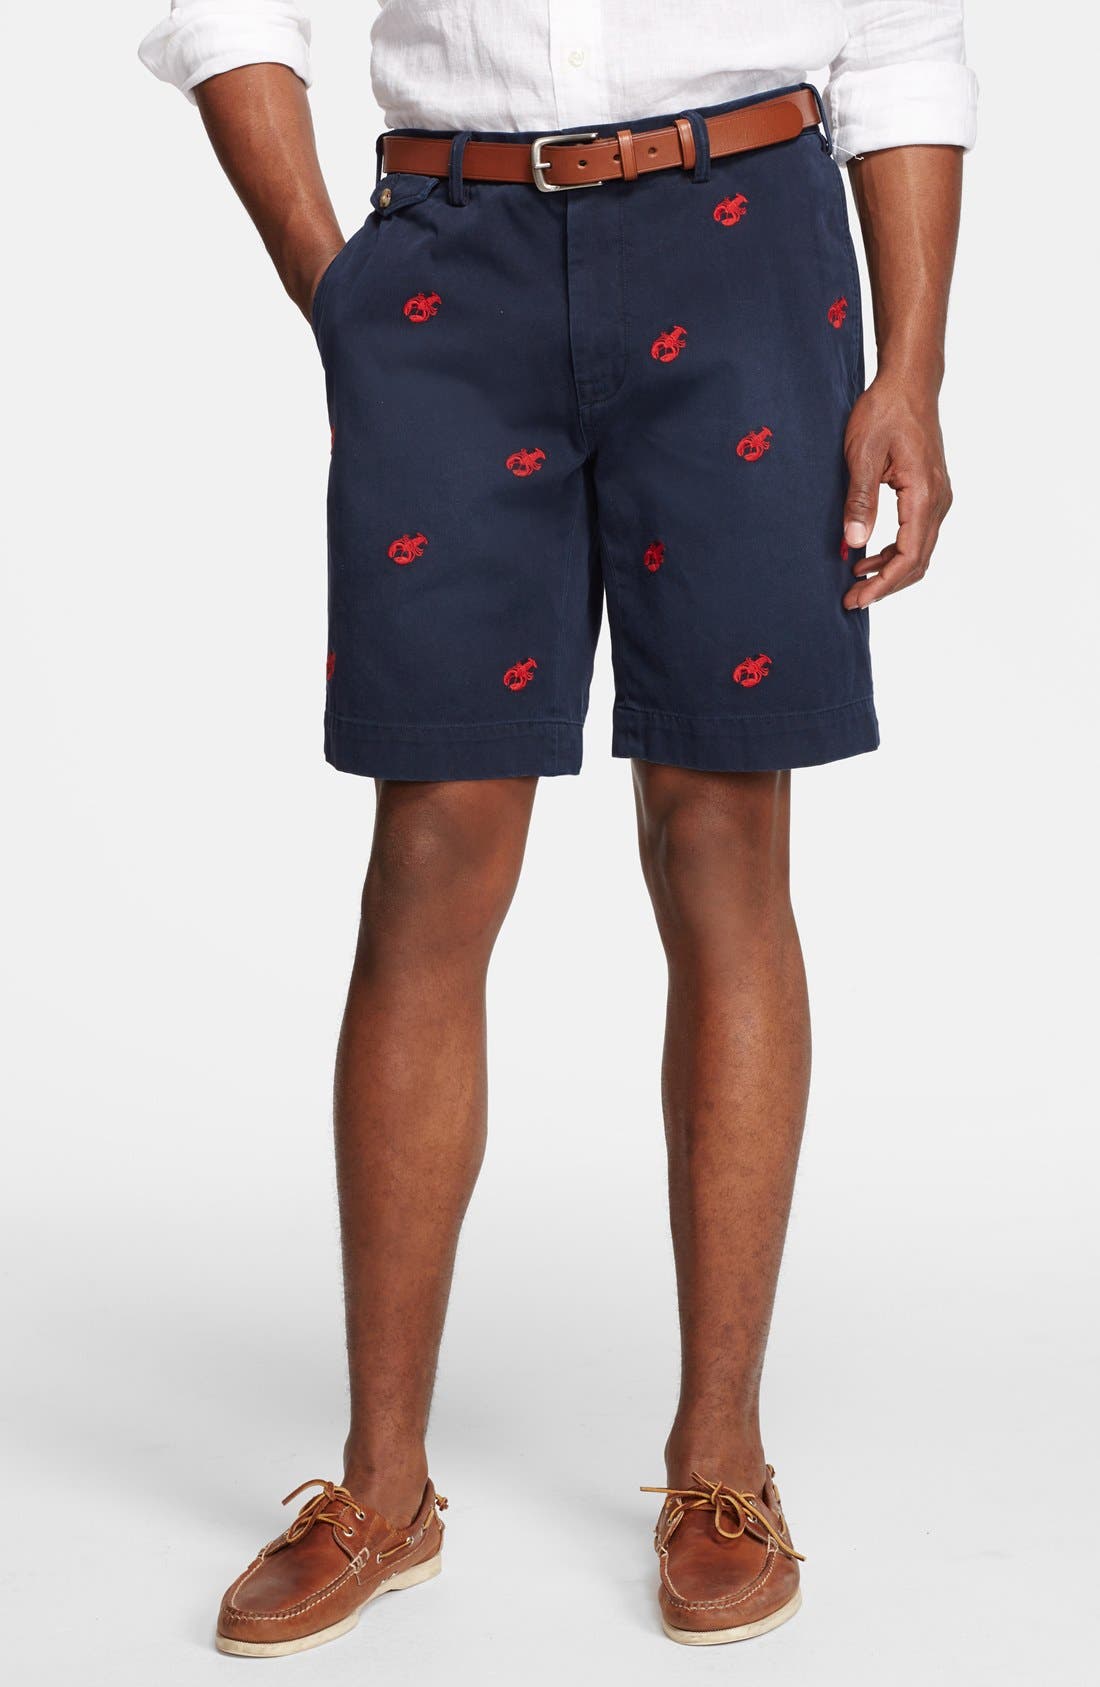 ralph lauren lobster shorts